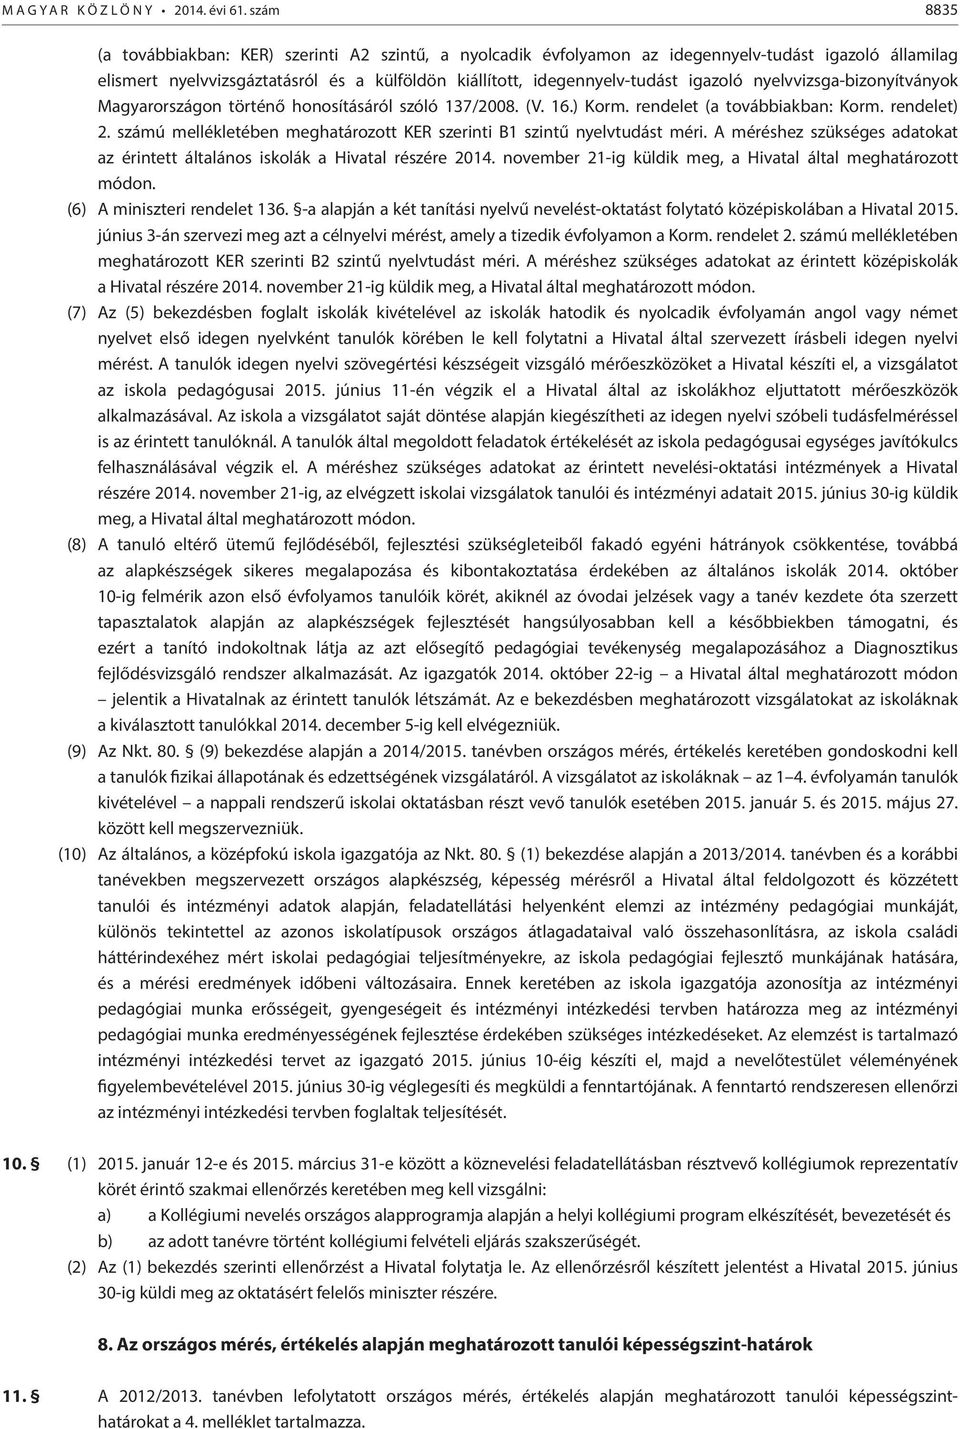 nyelvvizsga-bizonyítványok Magyarországon történő honosításáról szóló 137/2008. (V. 16.) Korm. rendelet (a továbbiakban: Korm. rendelet) 2.